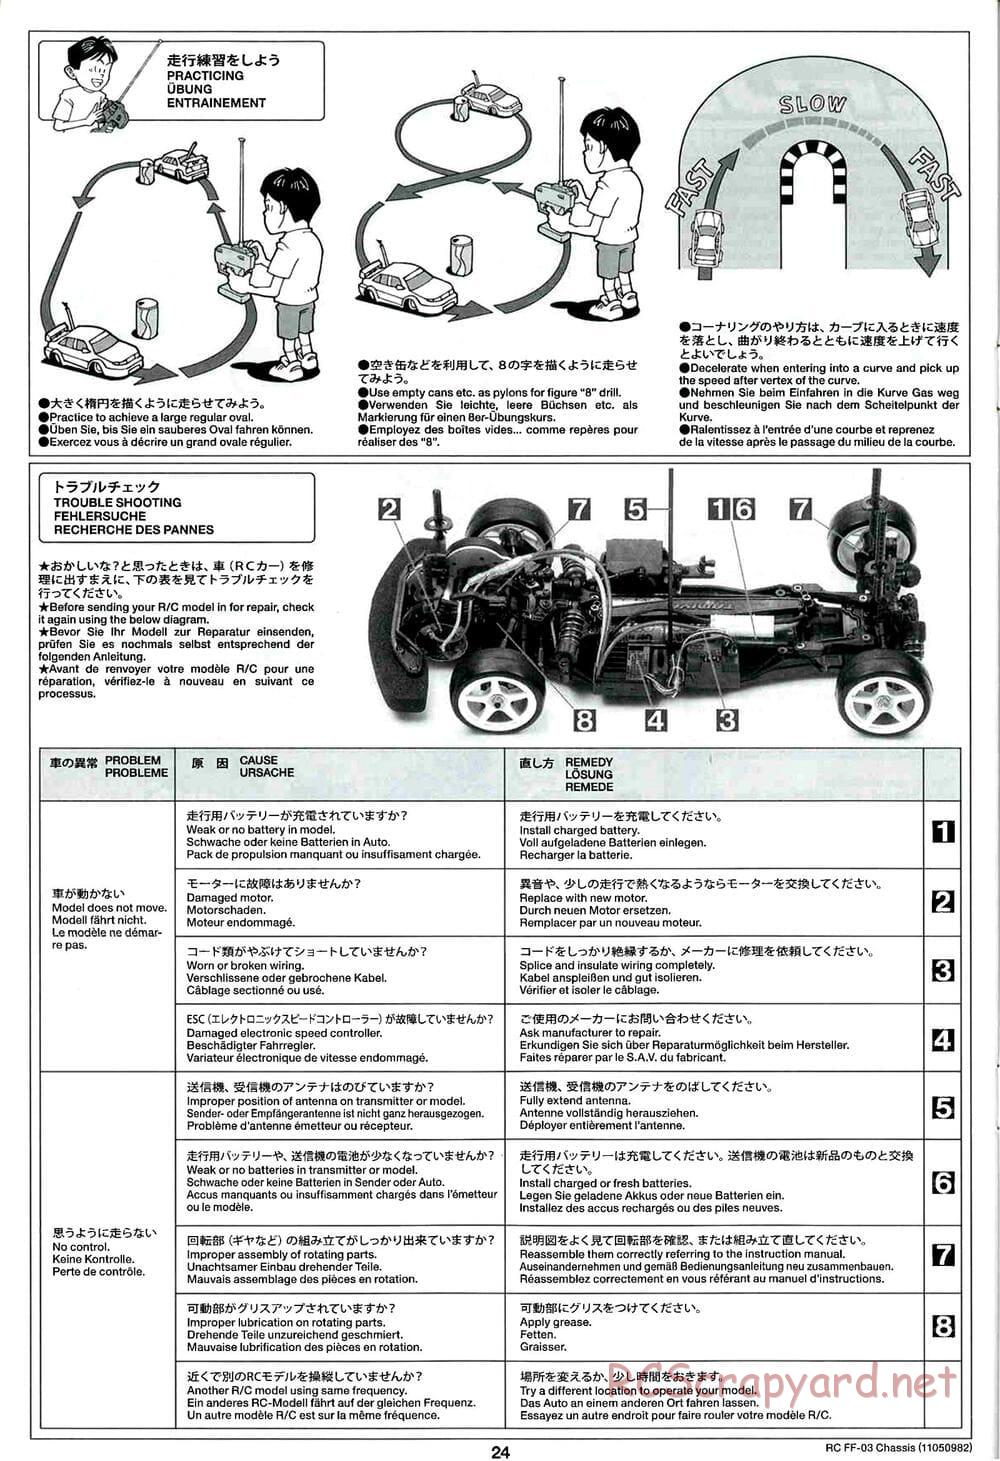 Tamiya - Honda CR-Z - FF-03 Chassis - Manual - Page 24